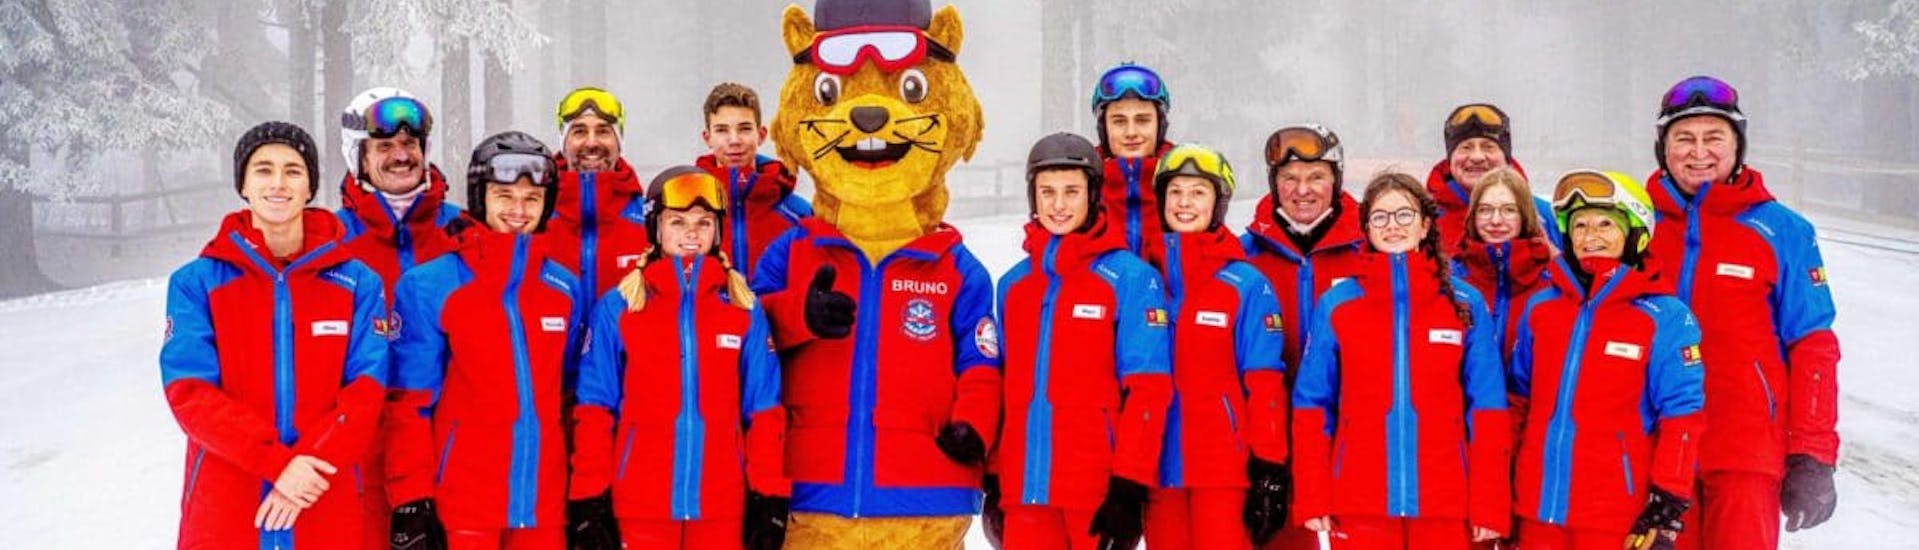 Alle skileraren van skischool Sankt Englmar gaan bij de kinderskilessen (5-13 jaar) voor alle niveaus op de foto met mascotte Bruno.